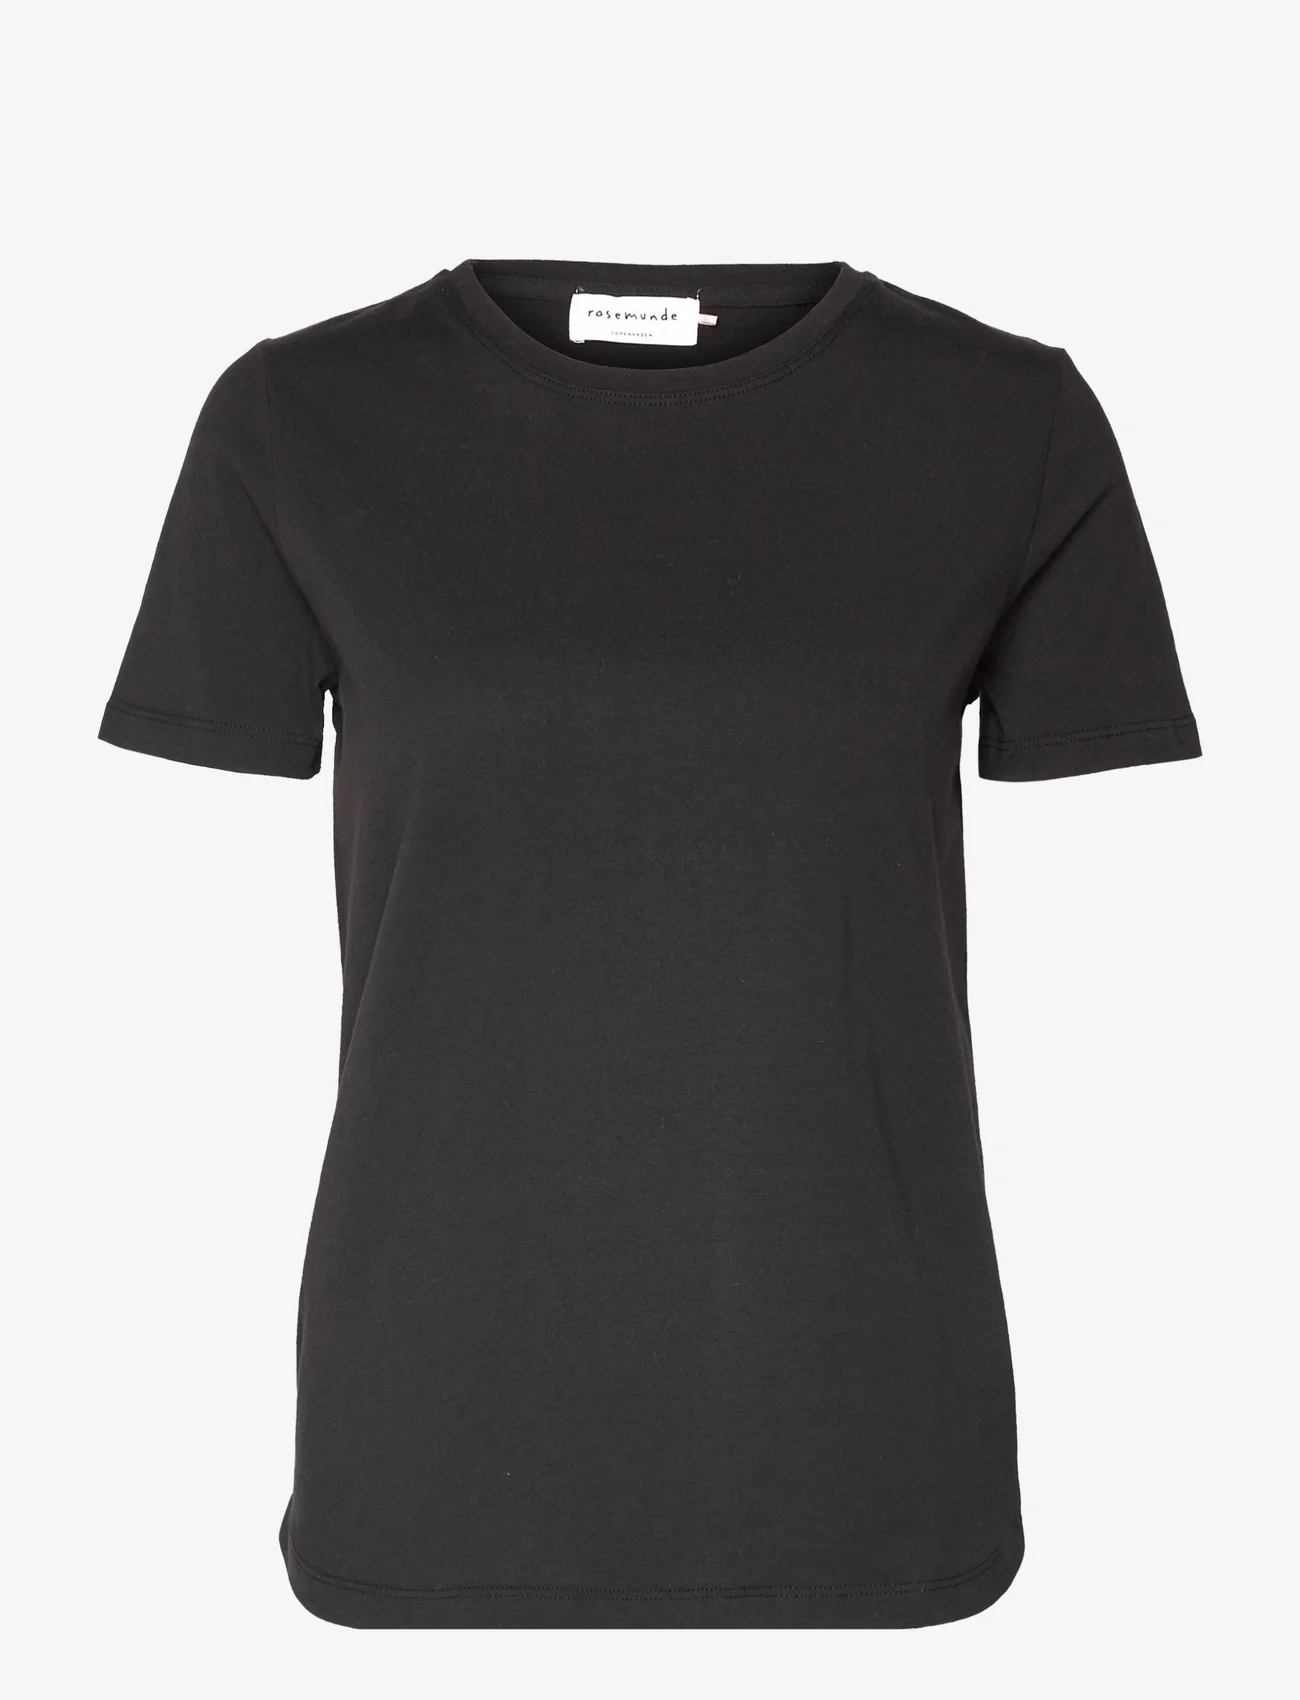 Rosemunde - Organic t-shirt - die niedrigsten preise - black - 0